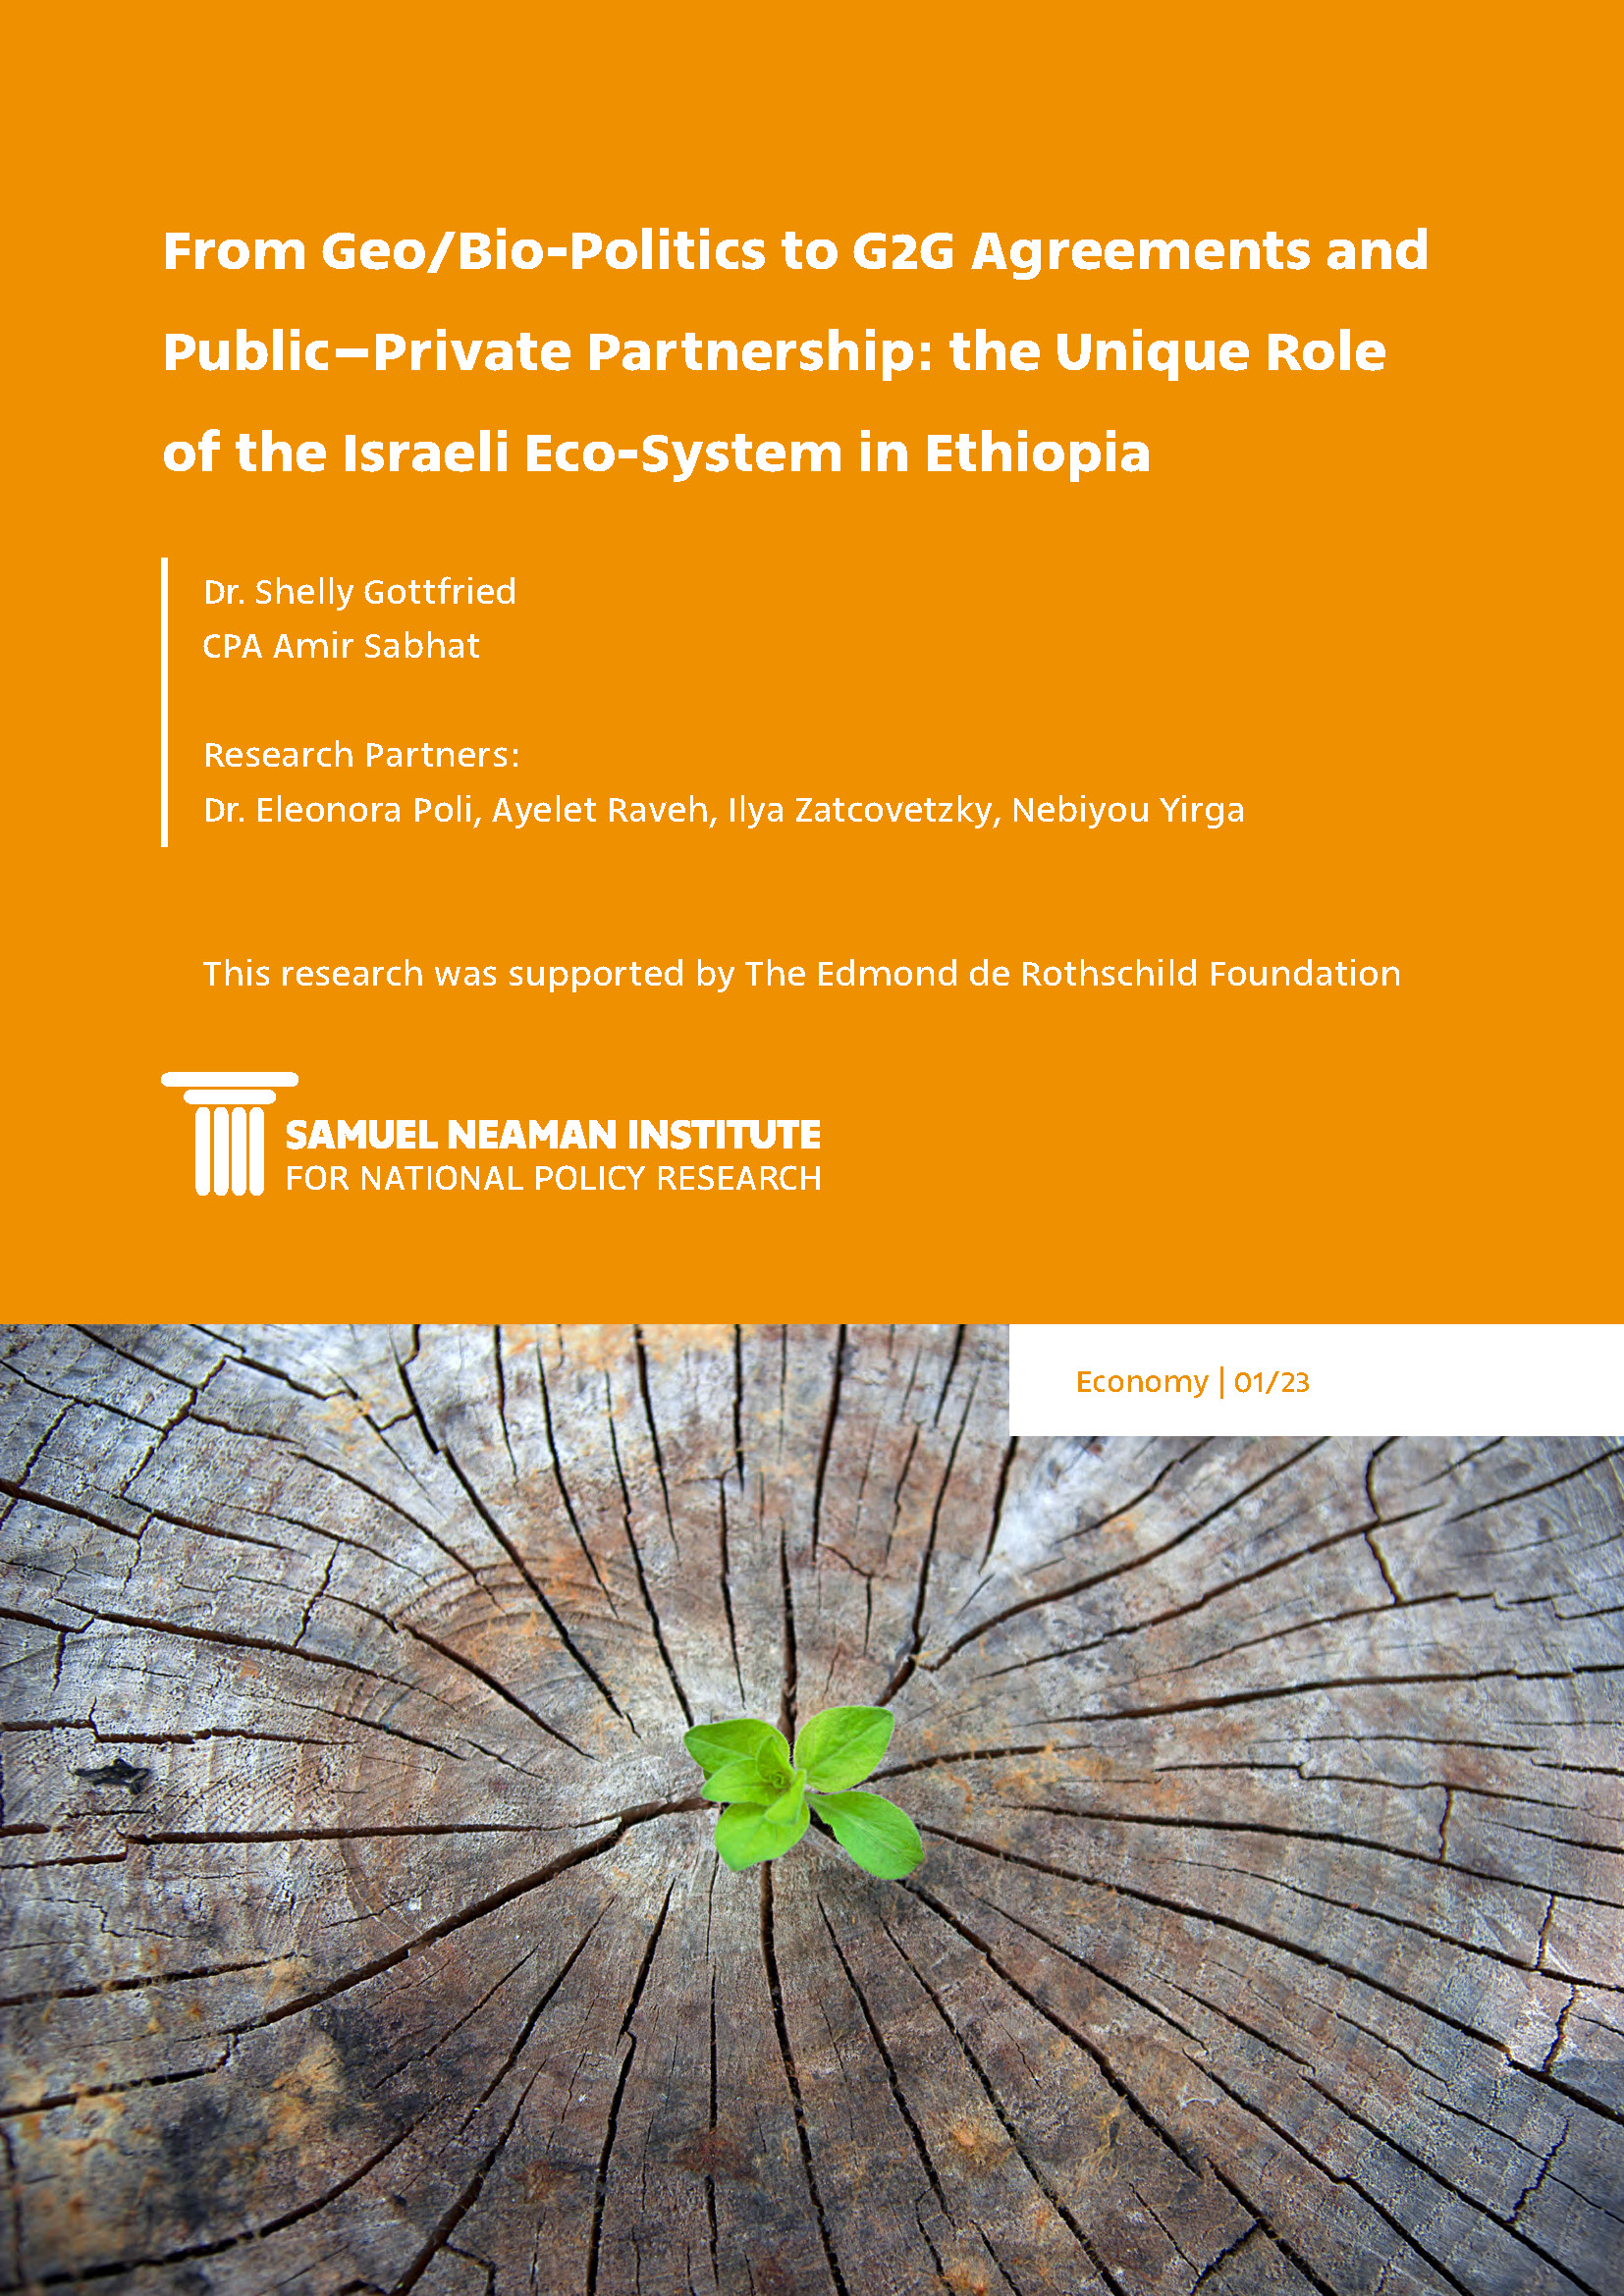 מגיאו/ביו-פוליטיקה להסכמים בין ממשלות (G2G) ושותפות ציבורית-פרטית: התפקיד הייחודי של אקו סיסטם האימפקט הישראלי באתיופיה